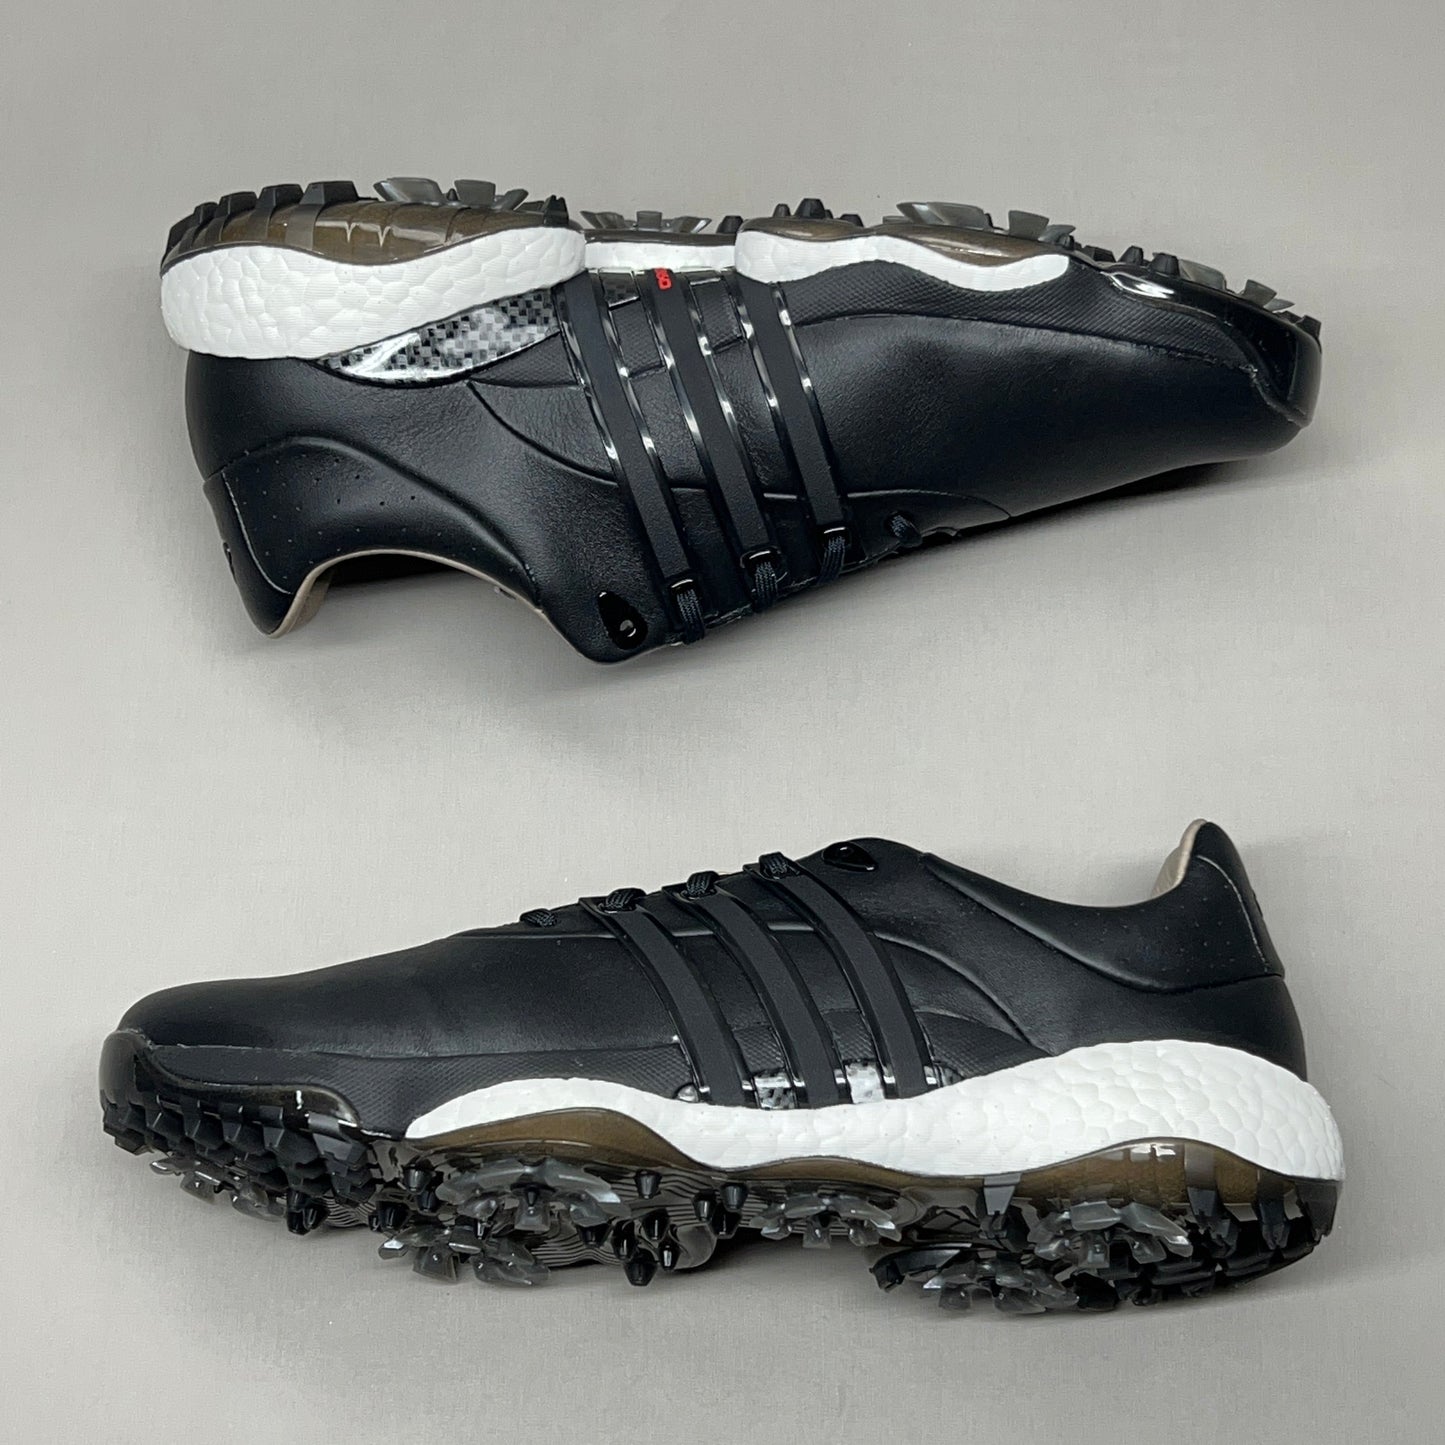 ADIDAS Golf Shoes TOUR360 22 Leather Men's Sz 8.5 Black / Iron Metallic GZ3158 (New)